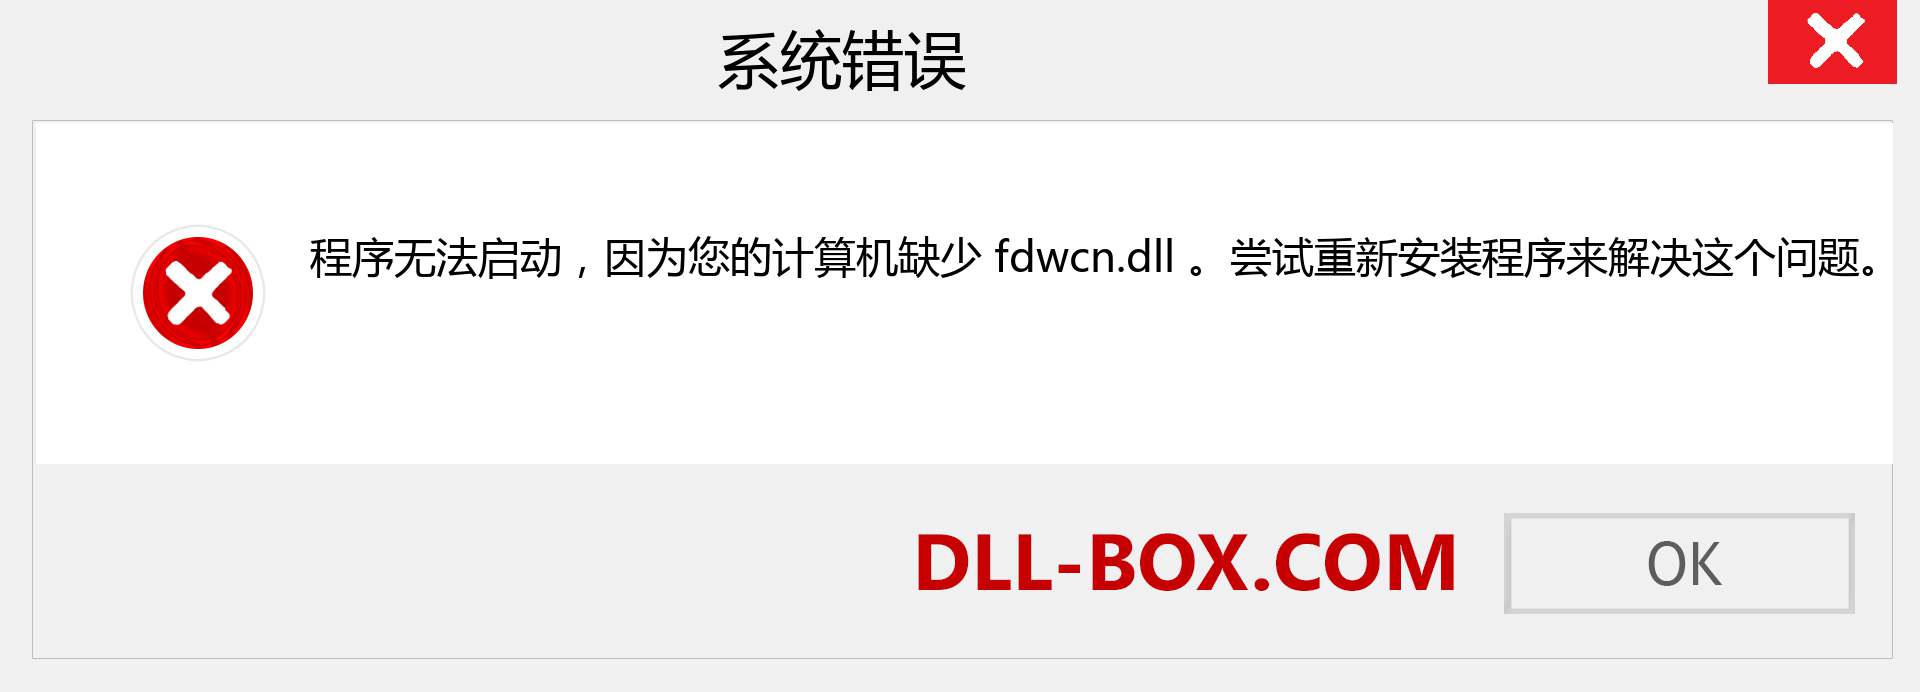 fdwcn.dll 文件丢失？。 适用于 Windows 7、8、10 的下载 - 修复 Windows、照片、图像上的 fdwcn dll 丢失错误